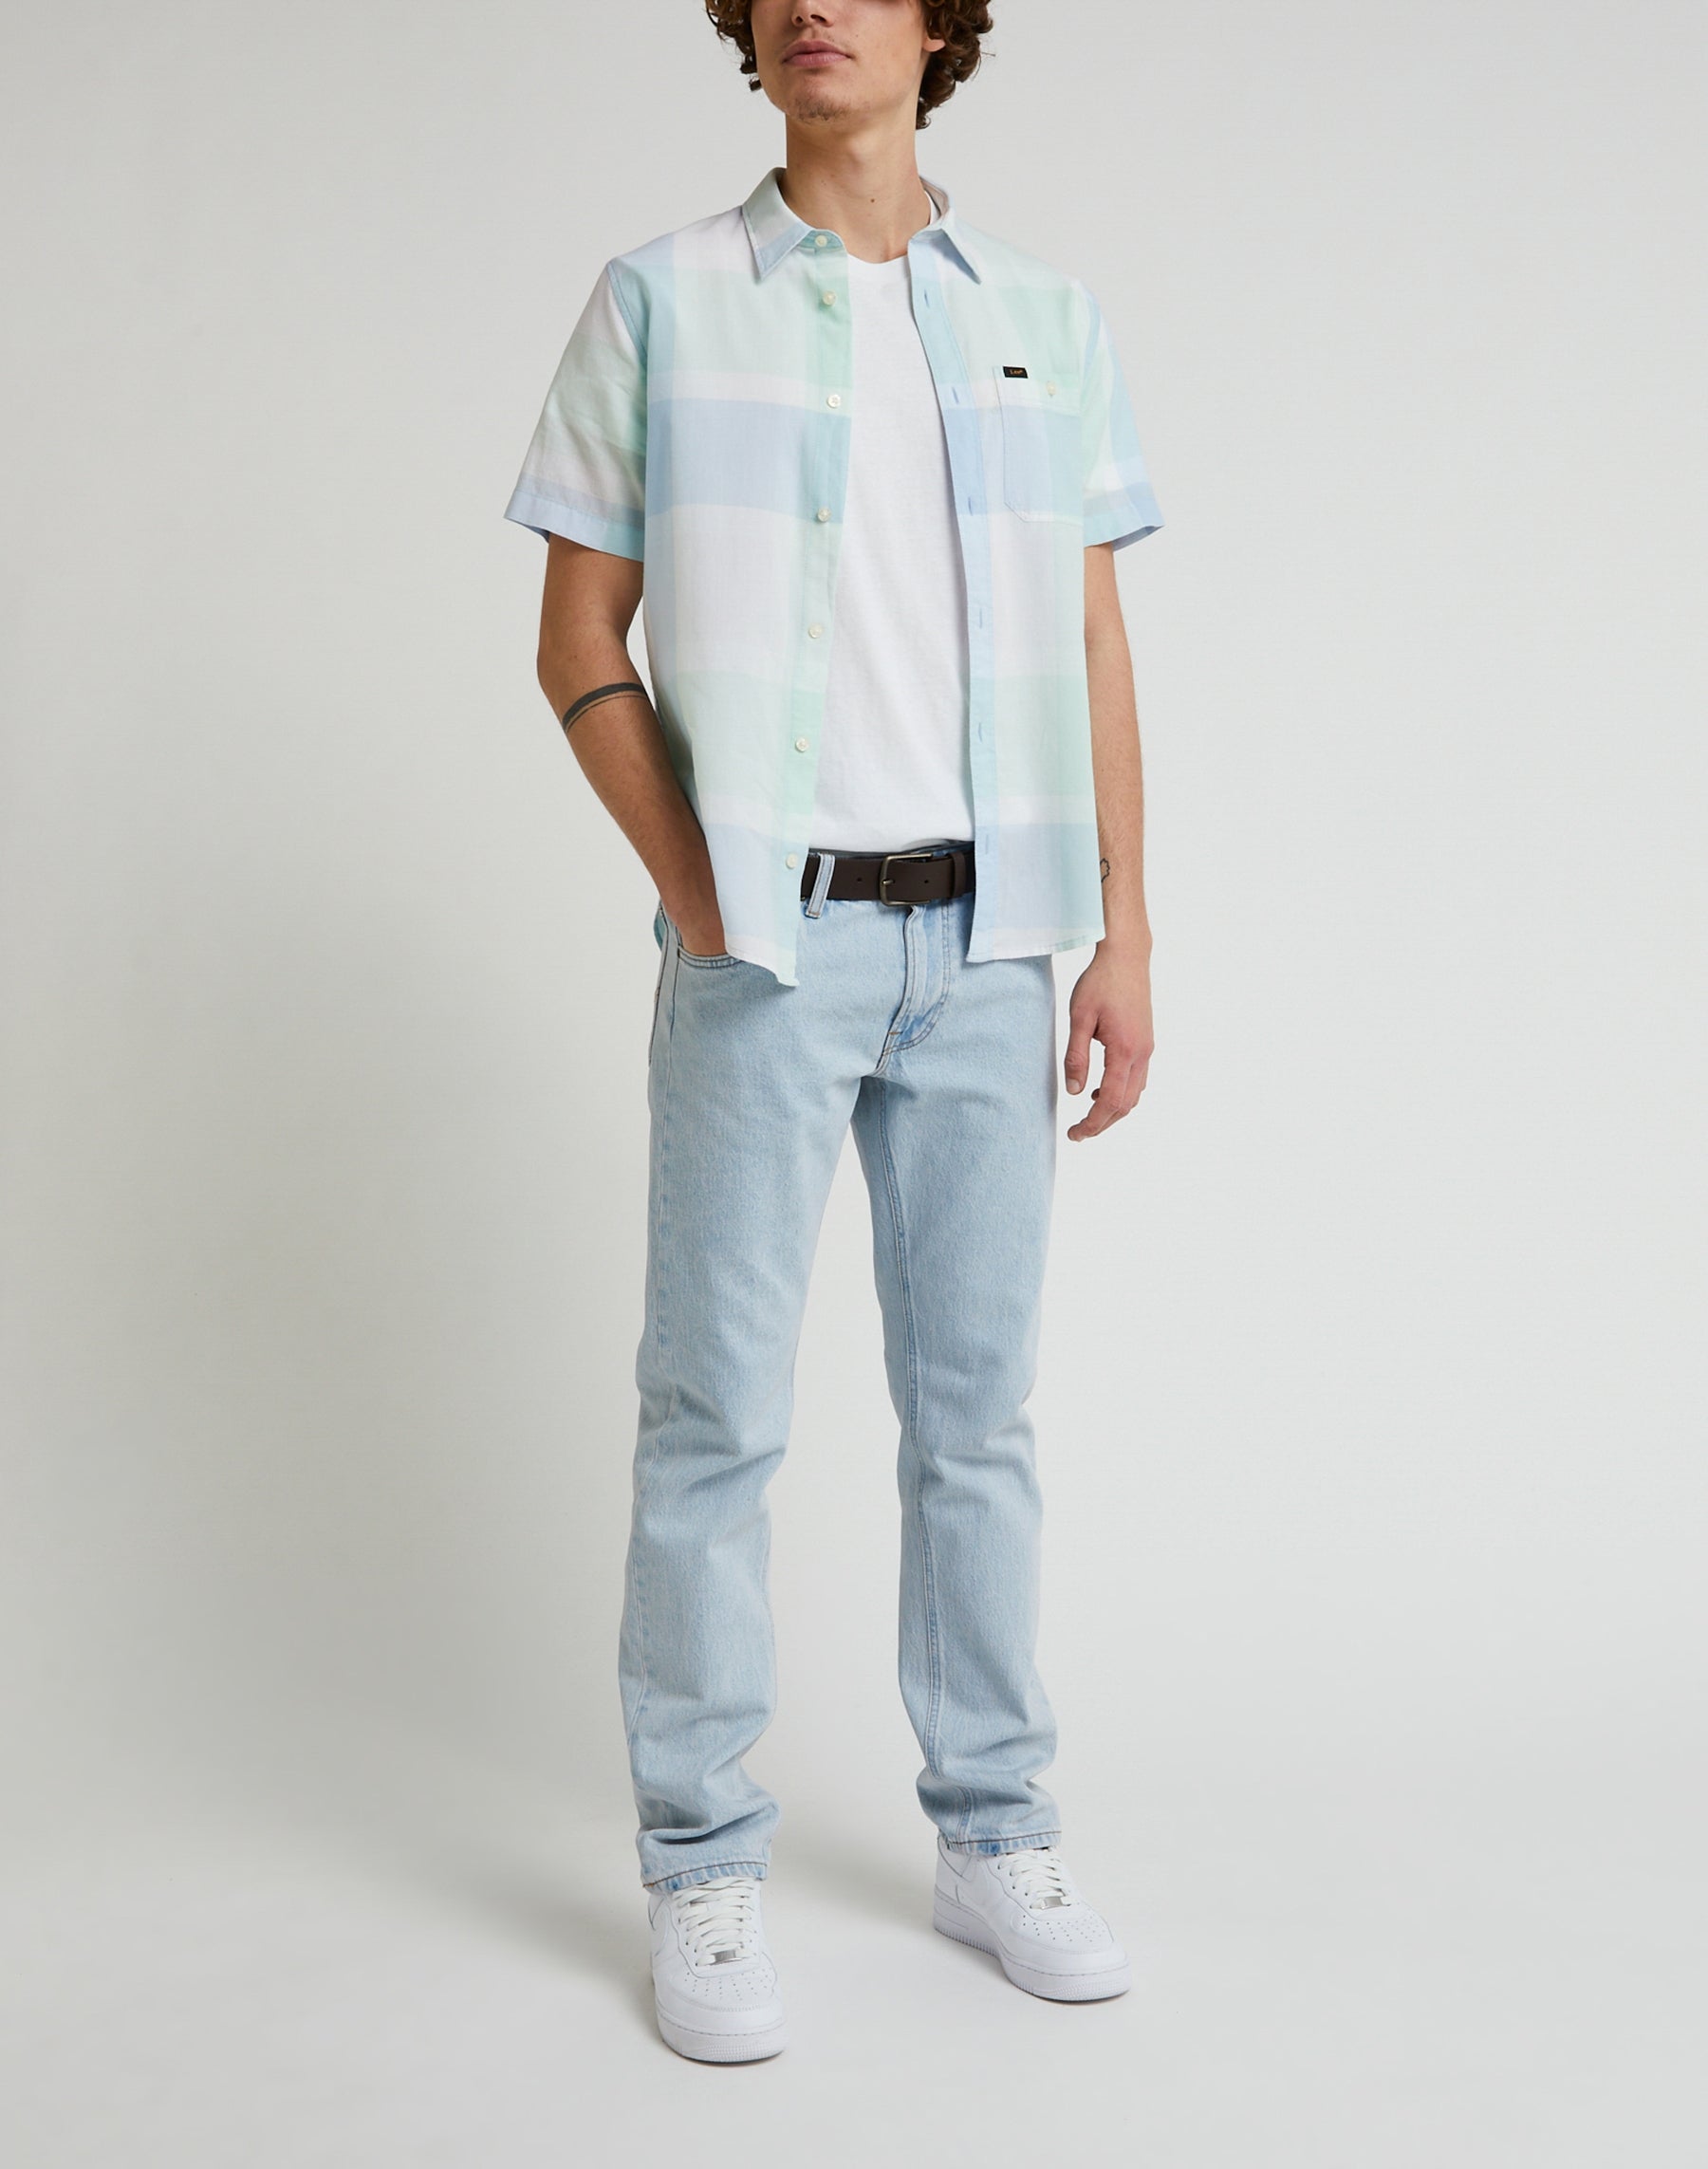 Short Sleeve Leesure Shirt in Seaglass Hemden Lee   